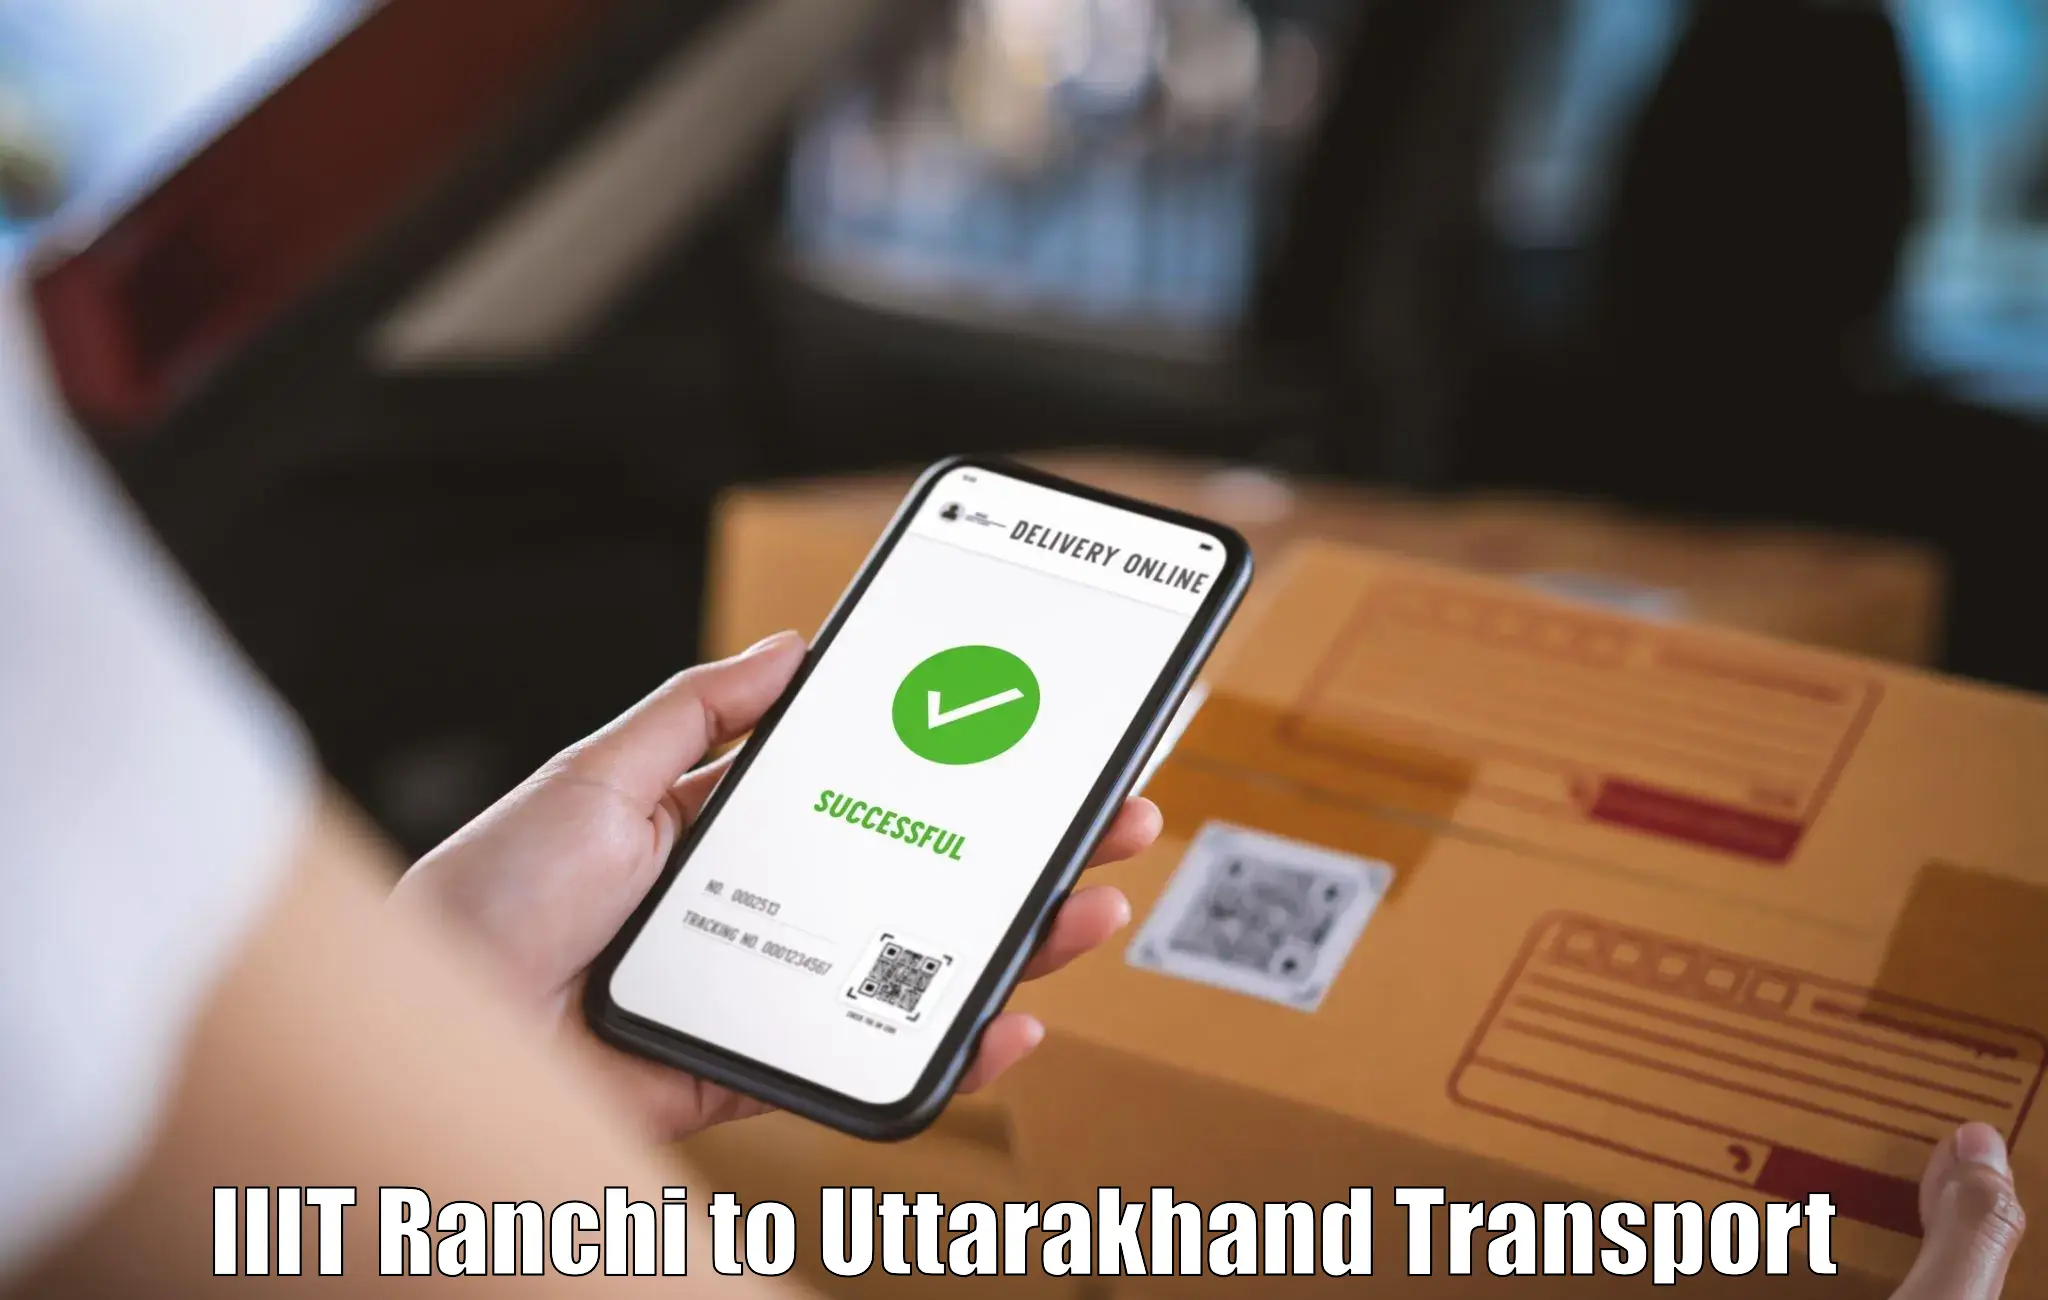 Nearby transport service IIIT Ranchi to Uttarakhand